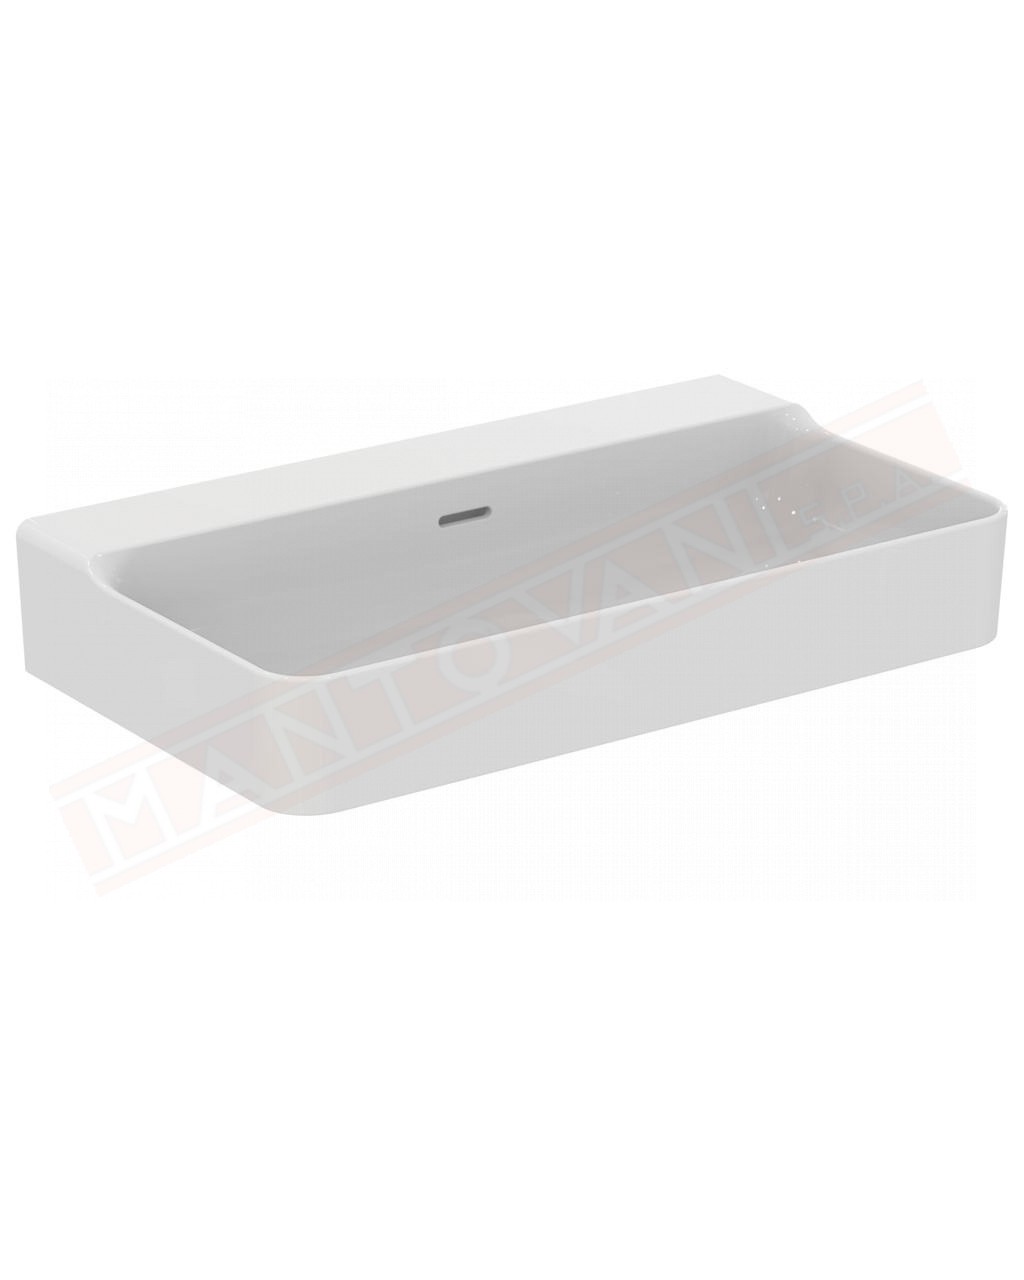 Ideal Standard Conca lavabo bagno da appoggio 80x45 cm con troppopieno e senza fori rubinetto lato inferiore rettificato